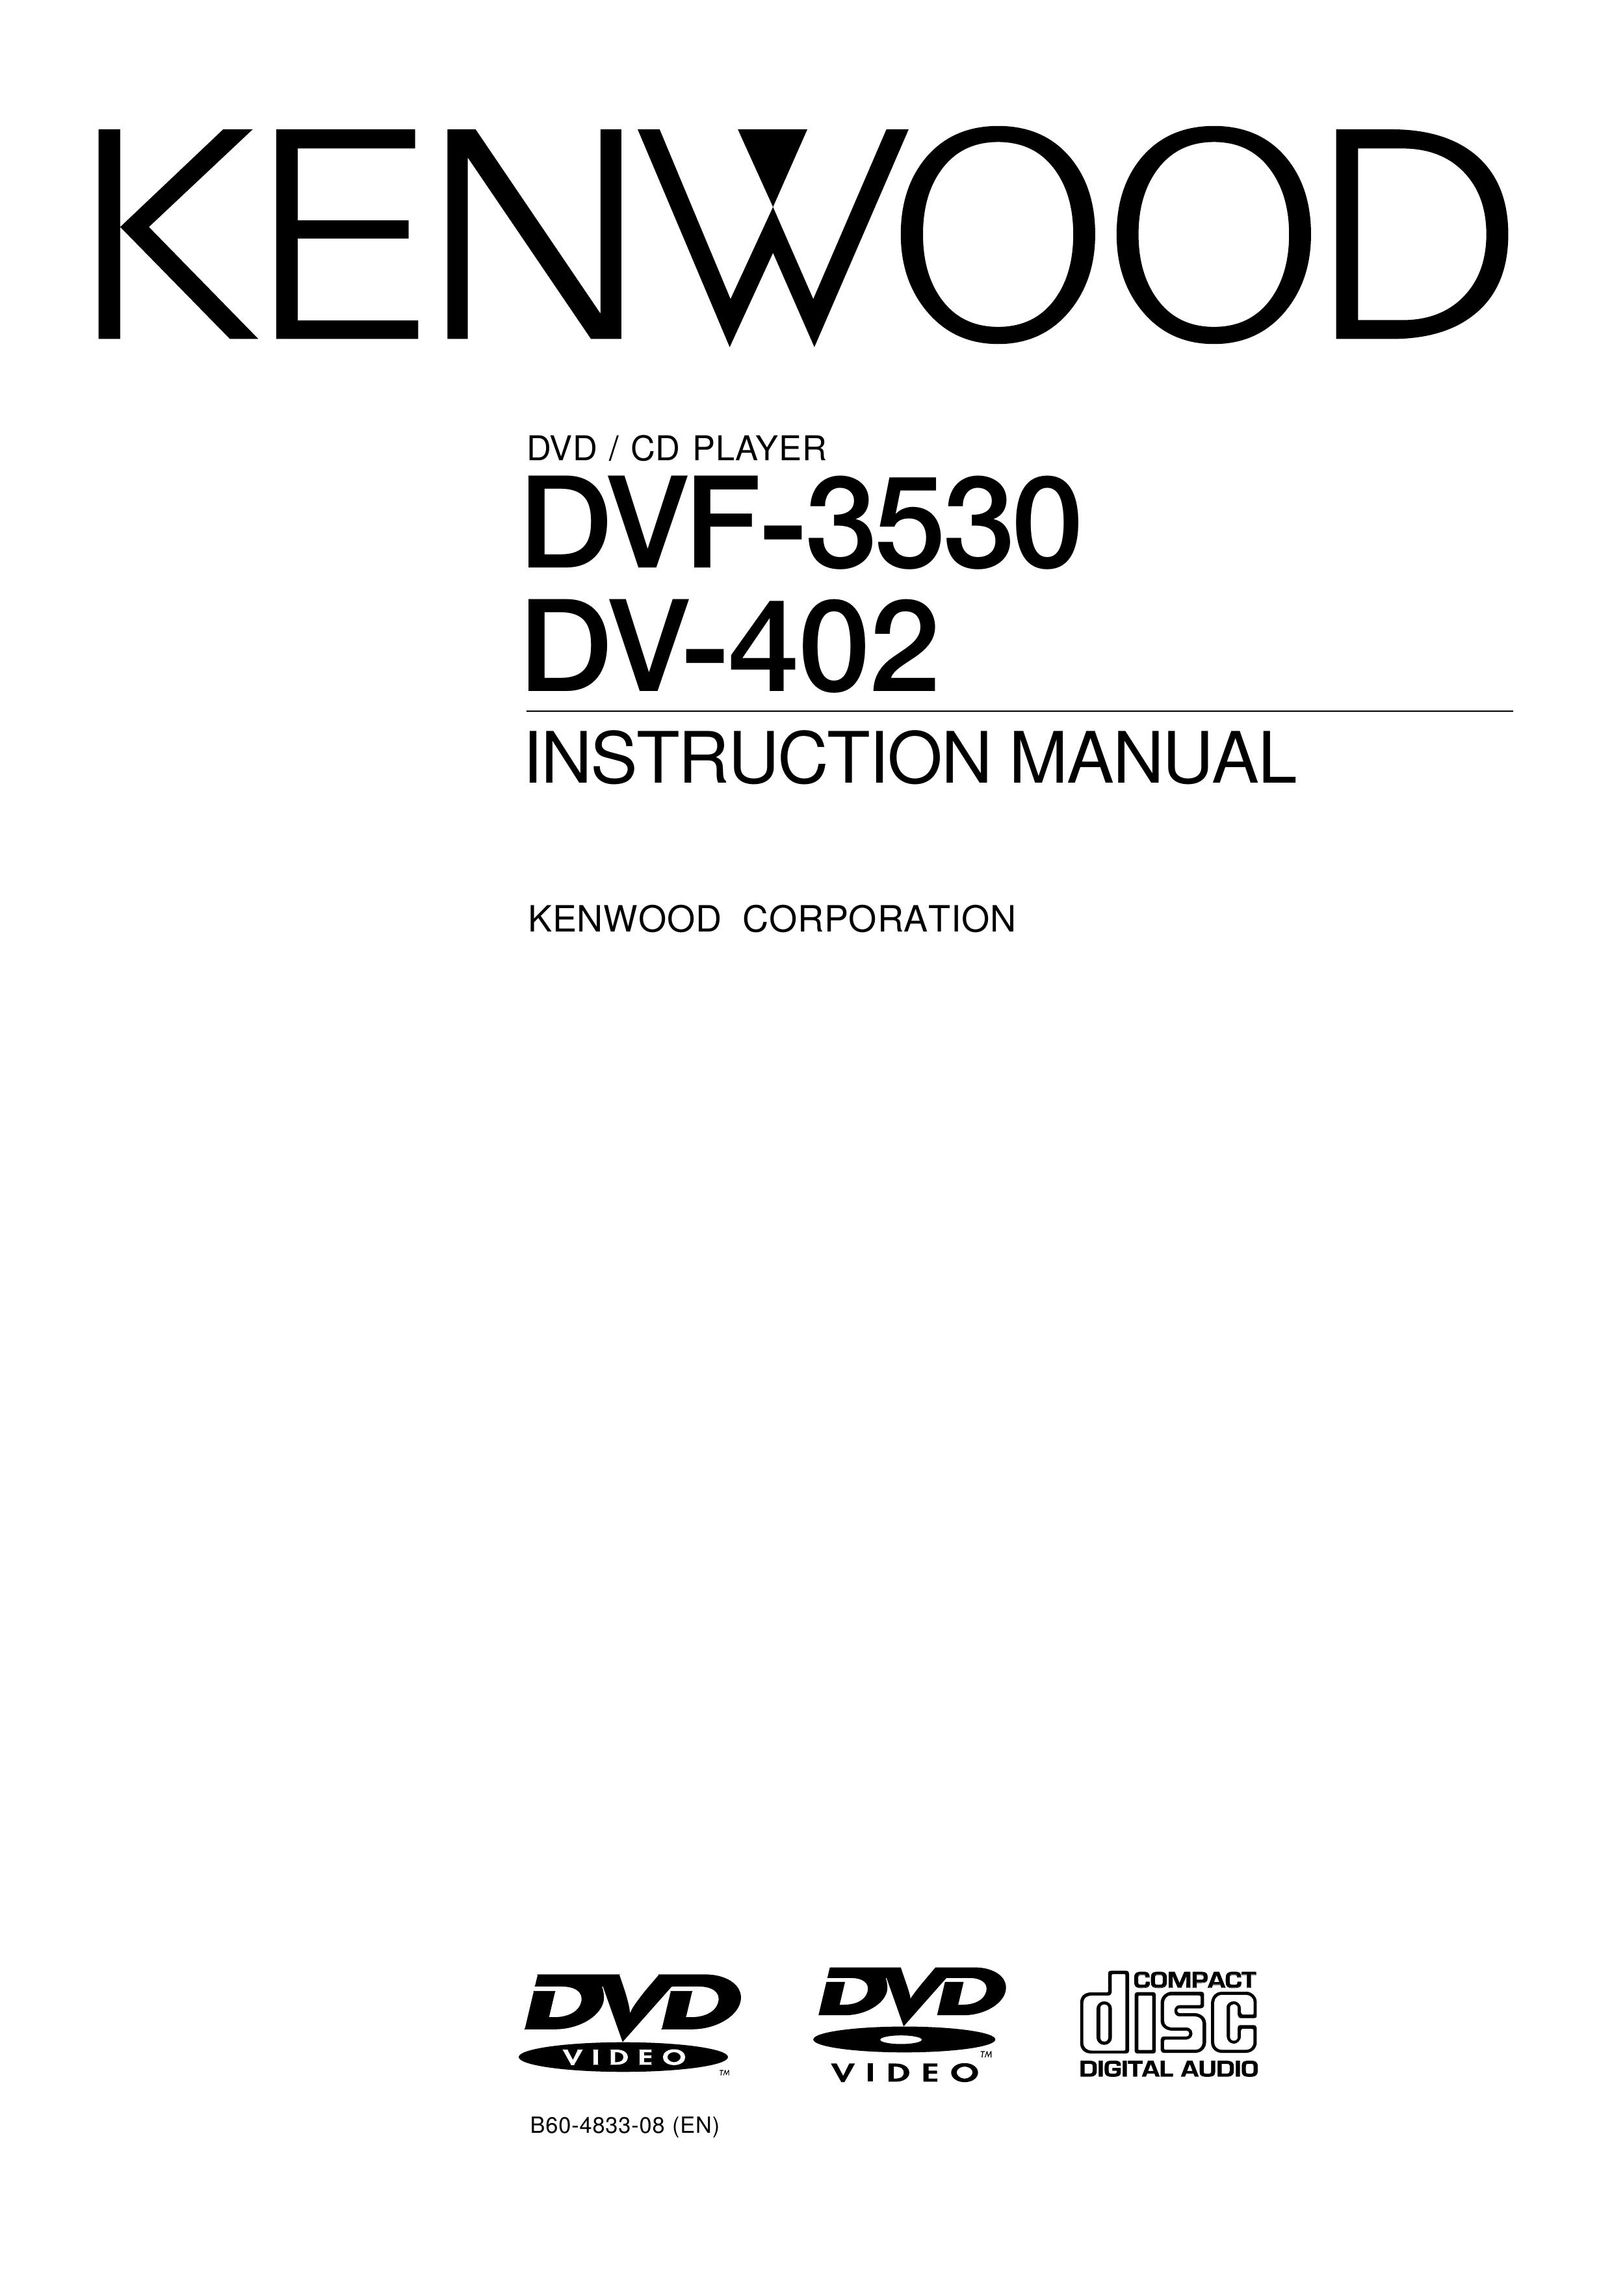 Kenwood DVF-3530 DVD Player User Manual